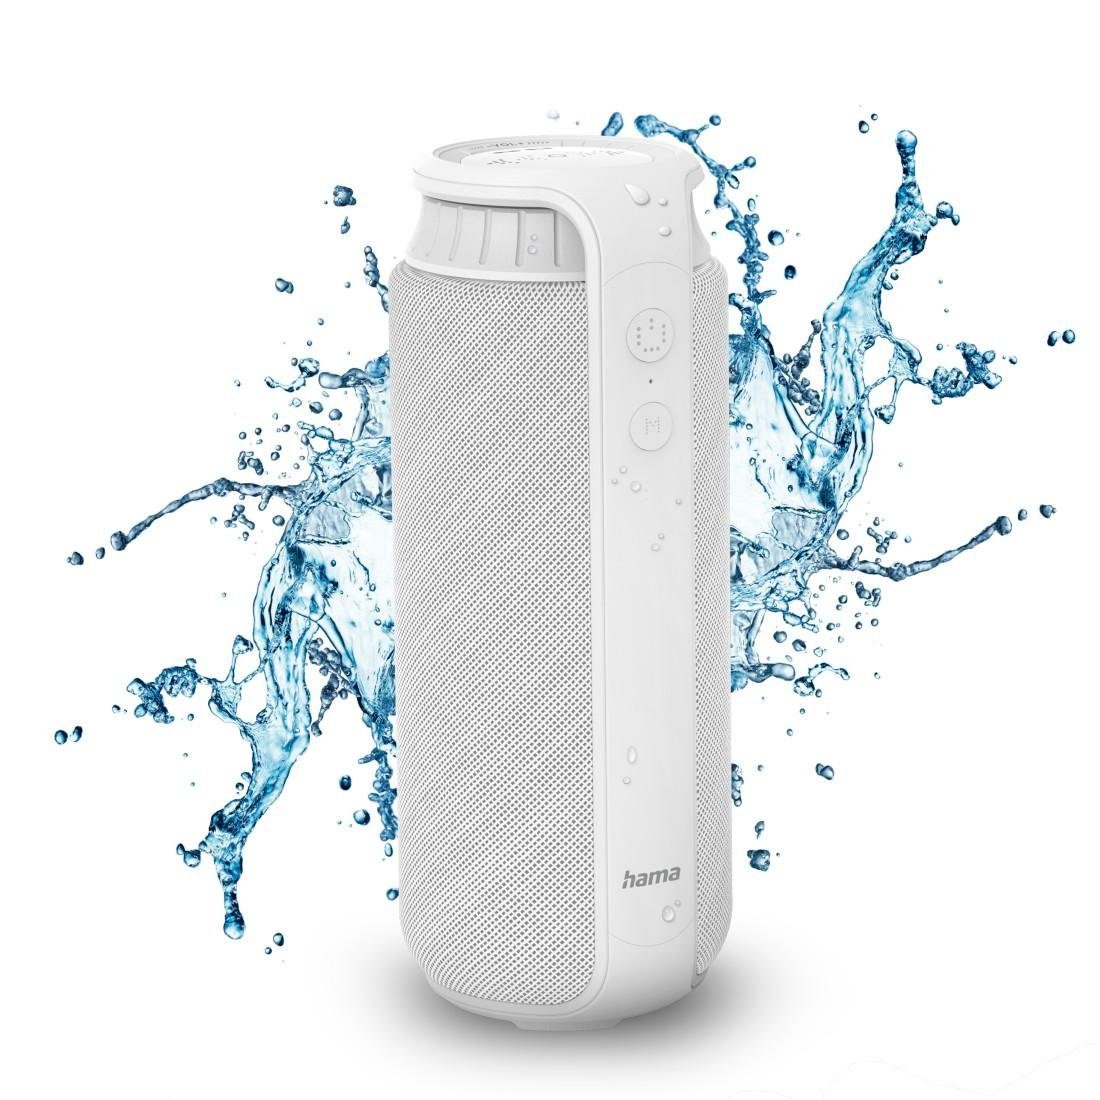 Hama Bluetooth®-Lautsprecher "Pipe 2.0", 24W Bluetooth-Lautsprecher (spritzwassergeschützt) weiß | Lautsprecher